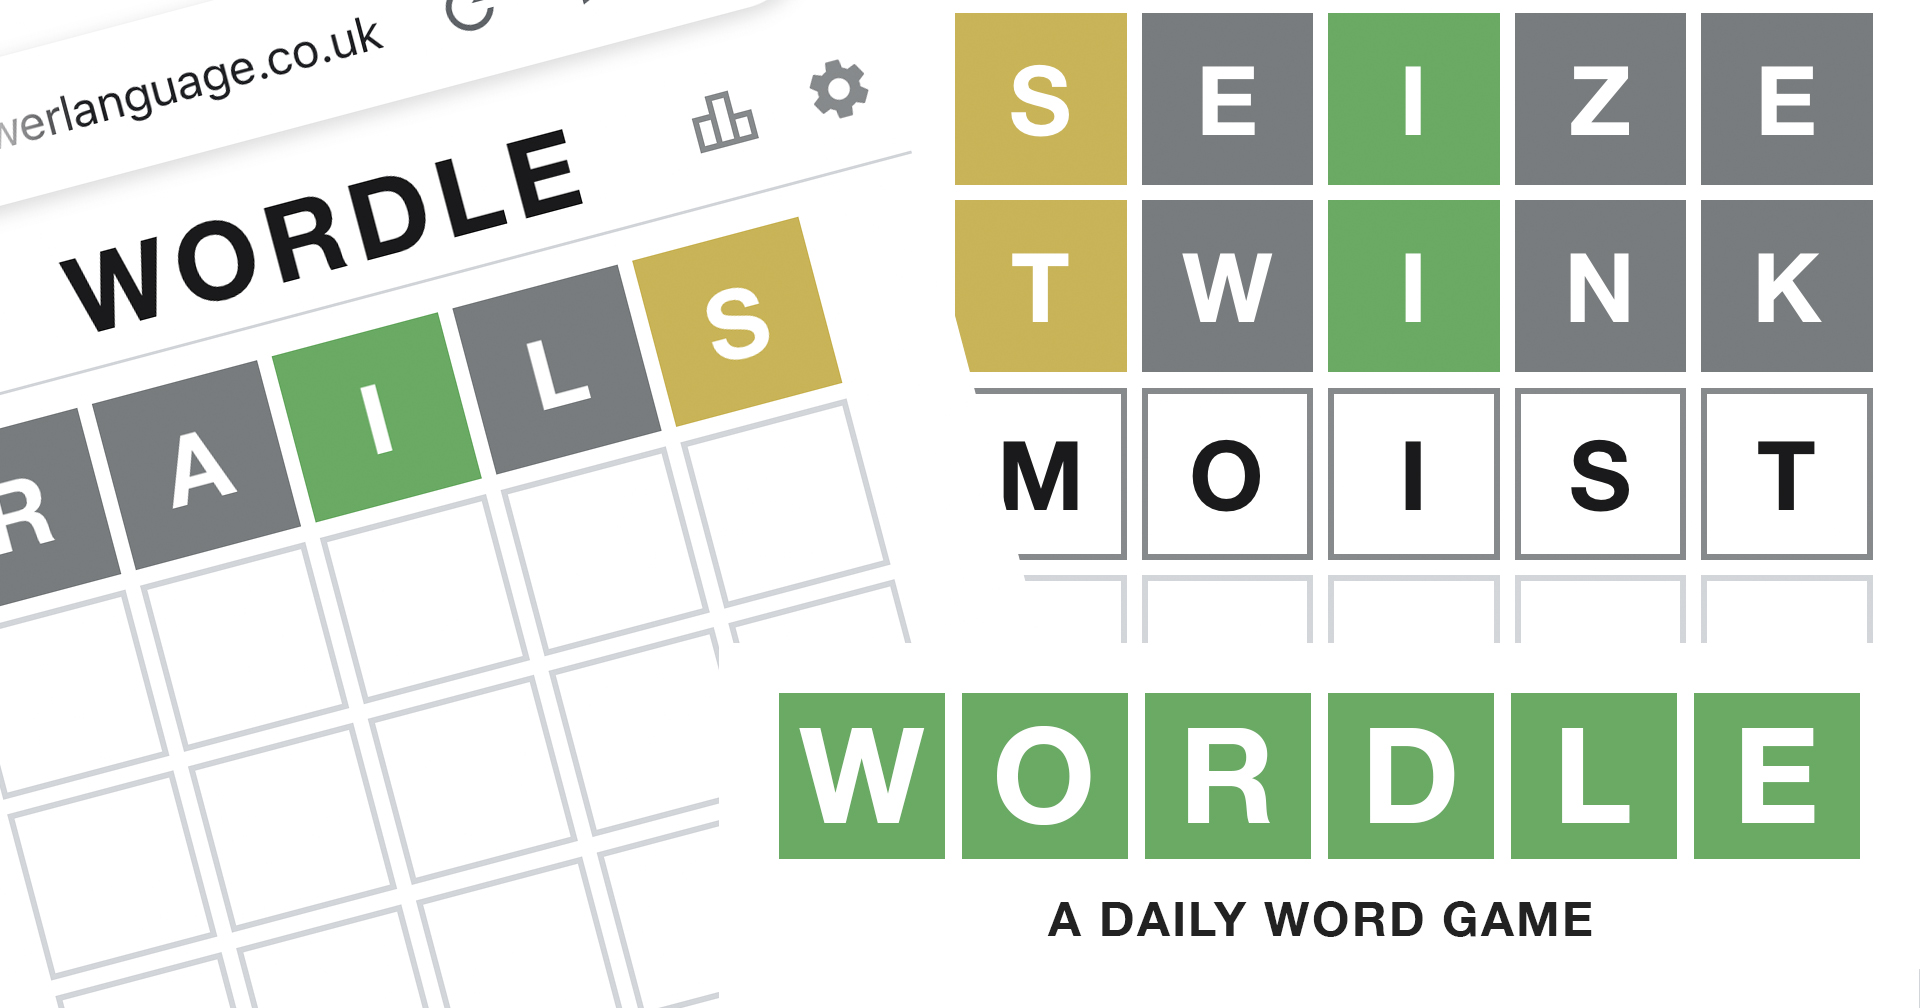 ผู้เชี่ยวชาญหลายแขนงแนะ ‘คำแรก’ ที่น่าใช้ในเกม WORDLE เพิ่มโอกาสชนะ